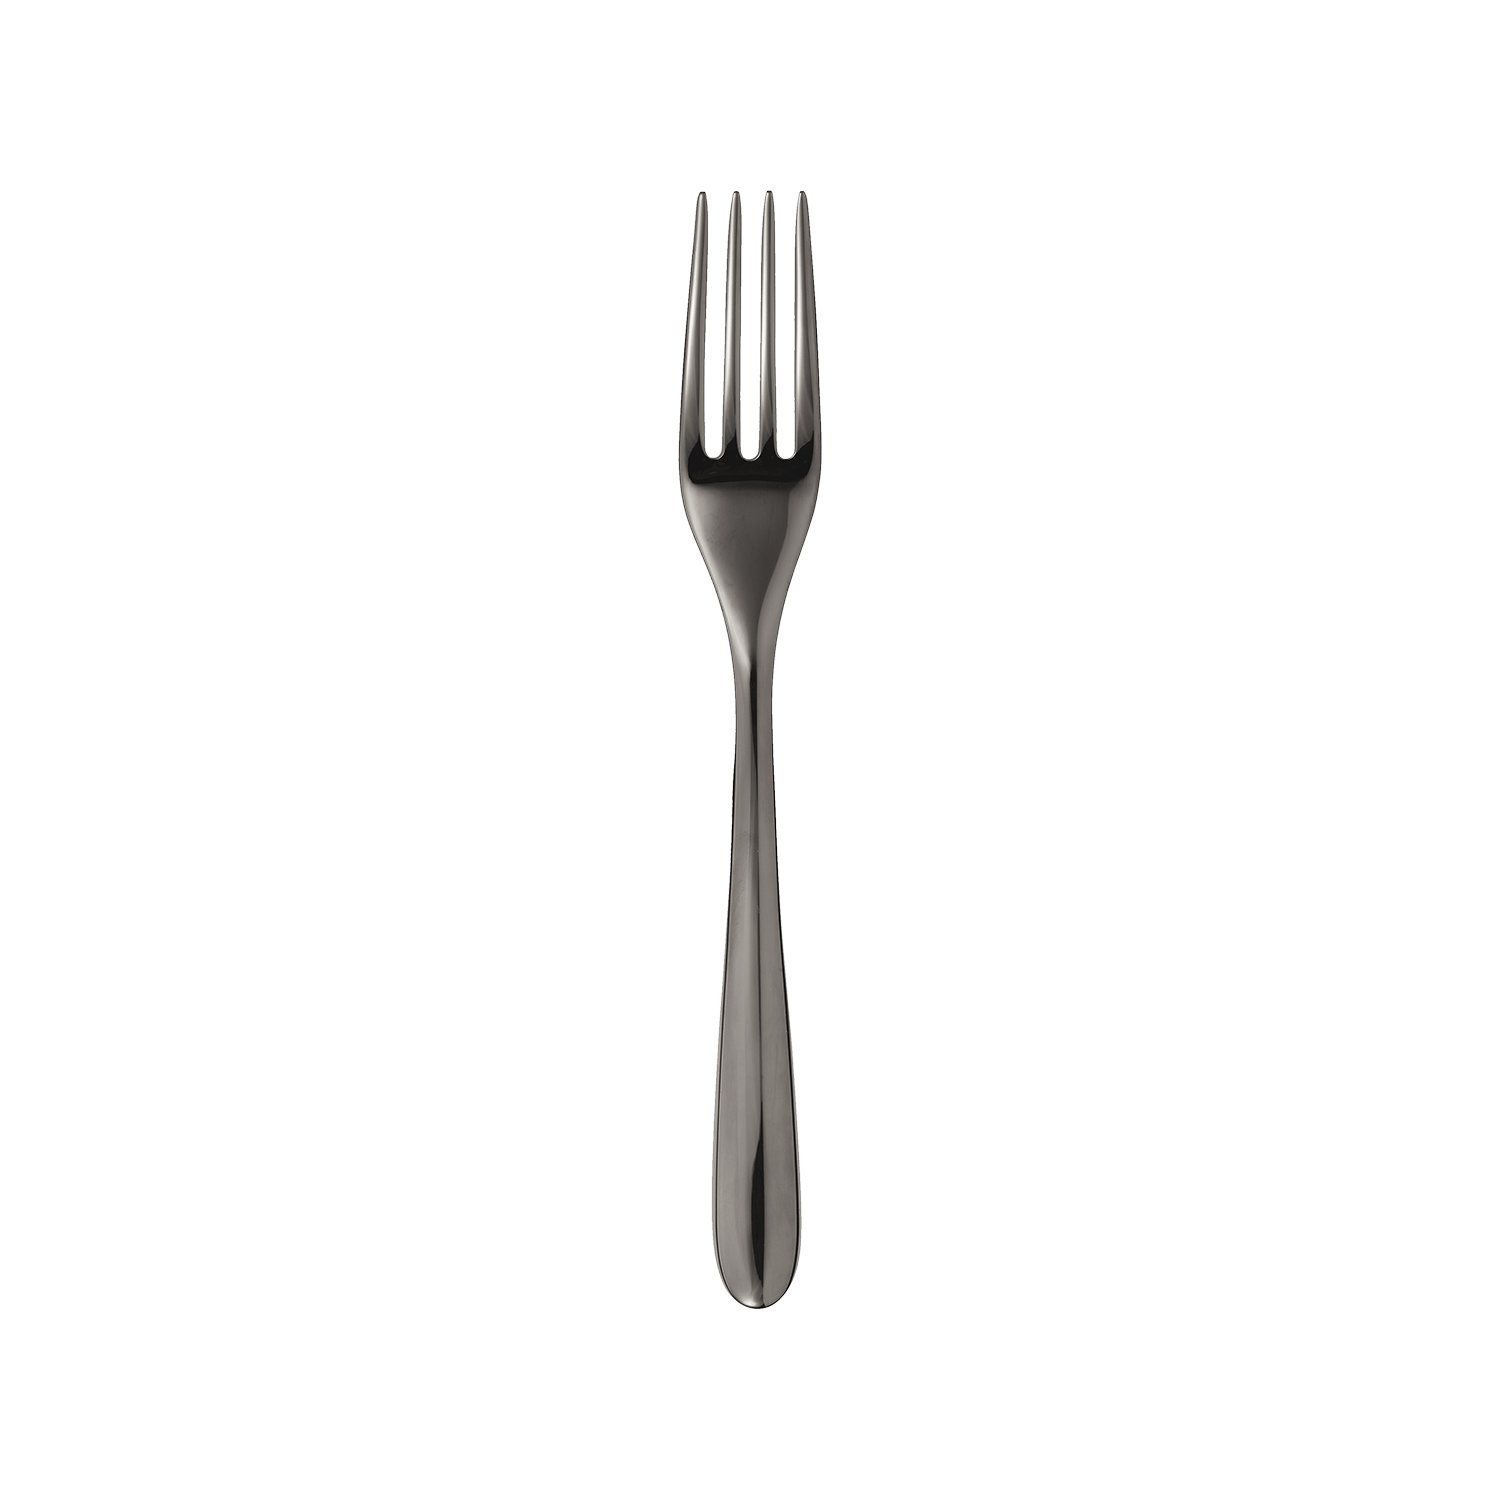 Black stainless steel dessert fork